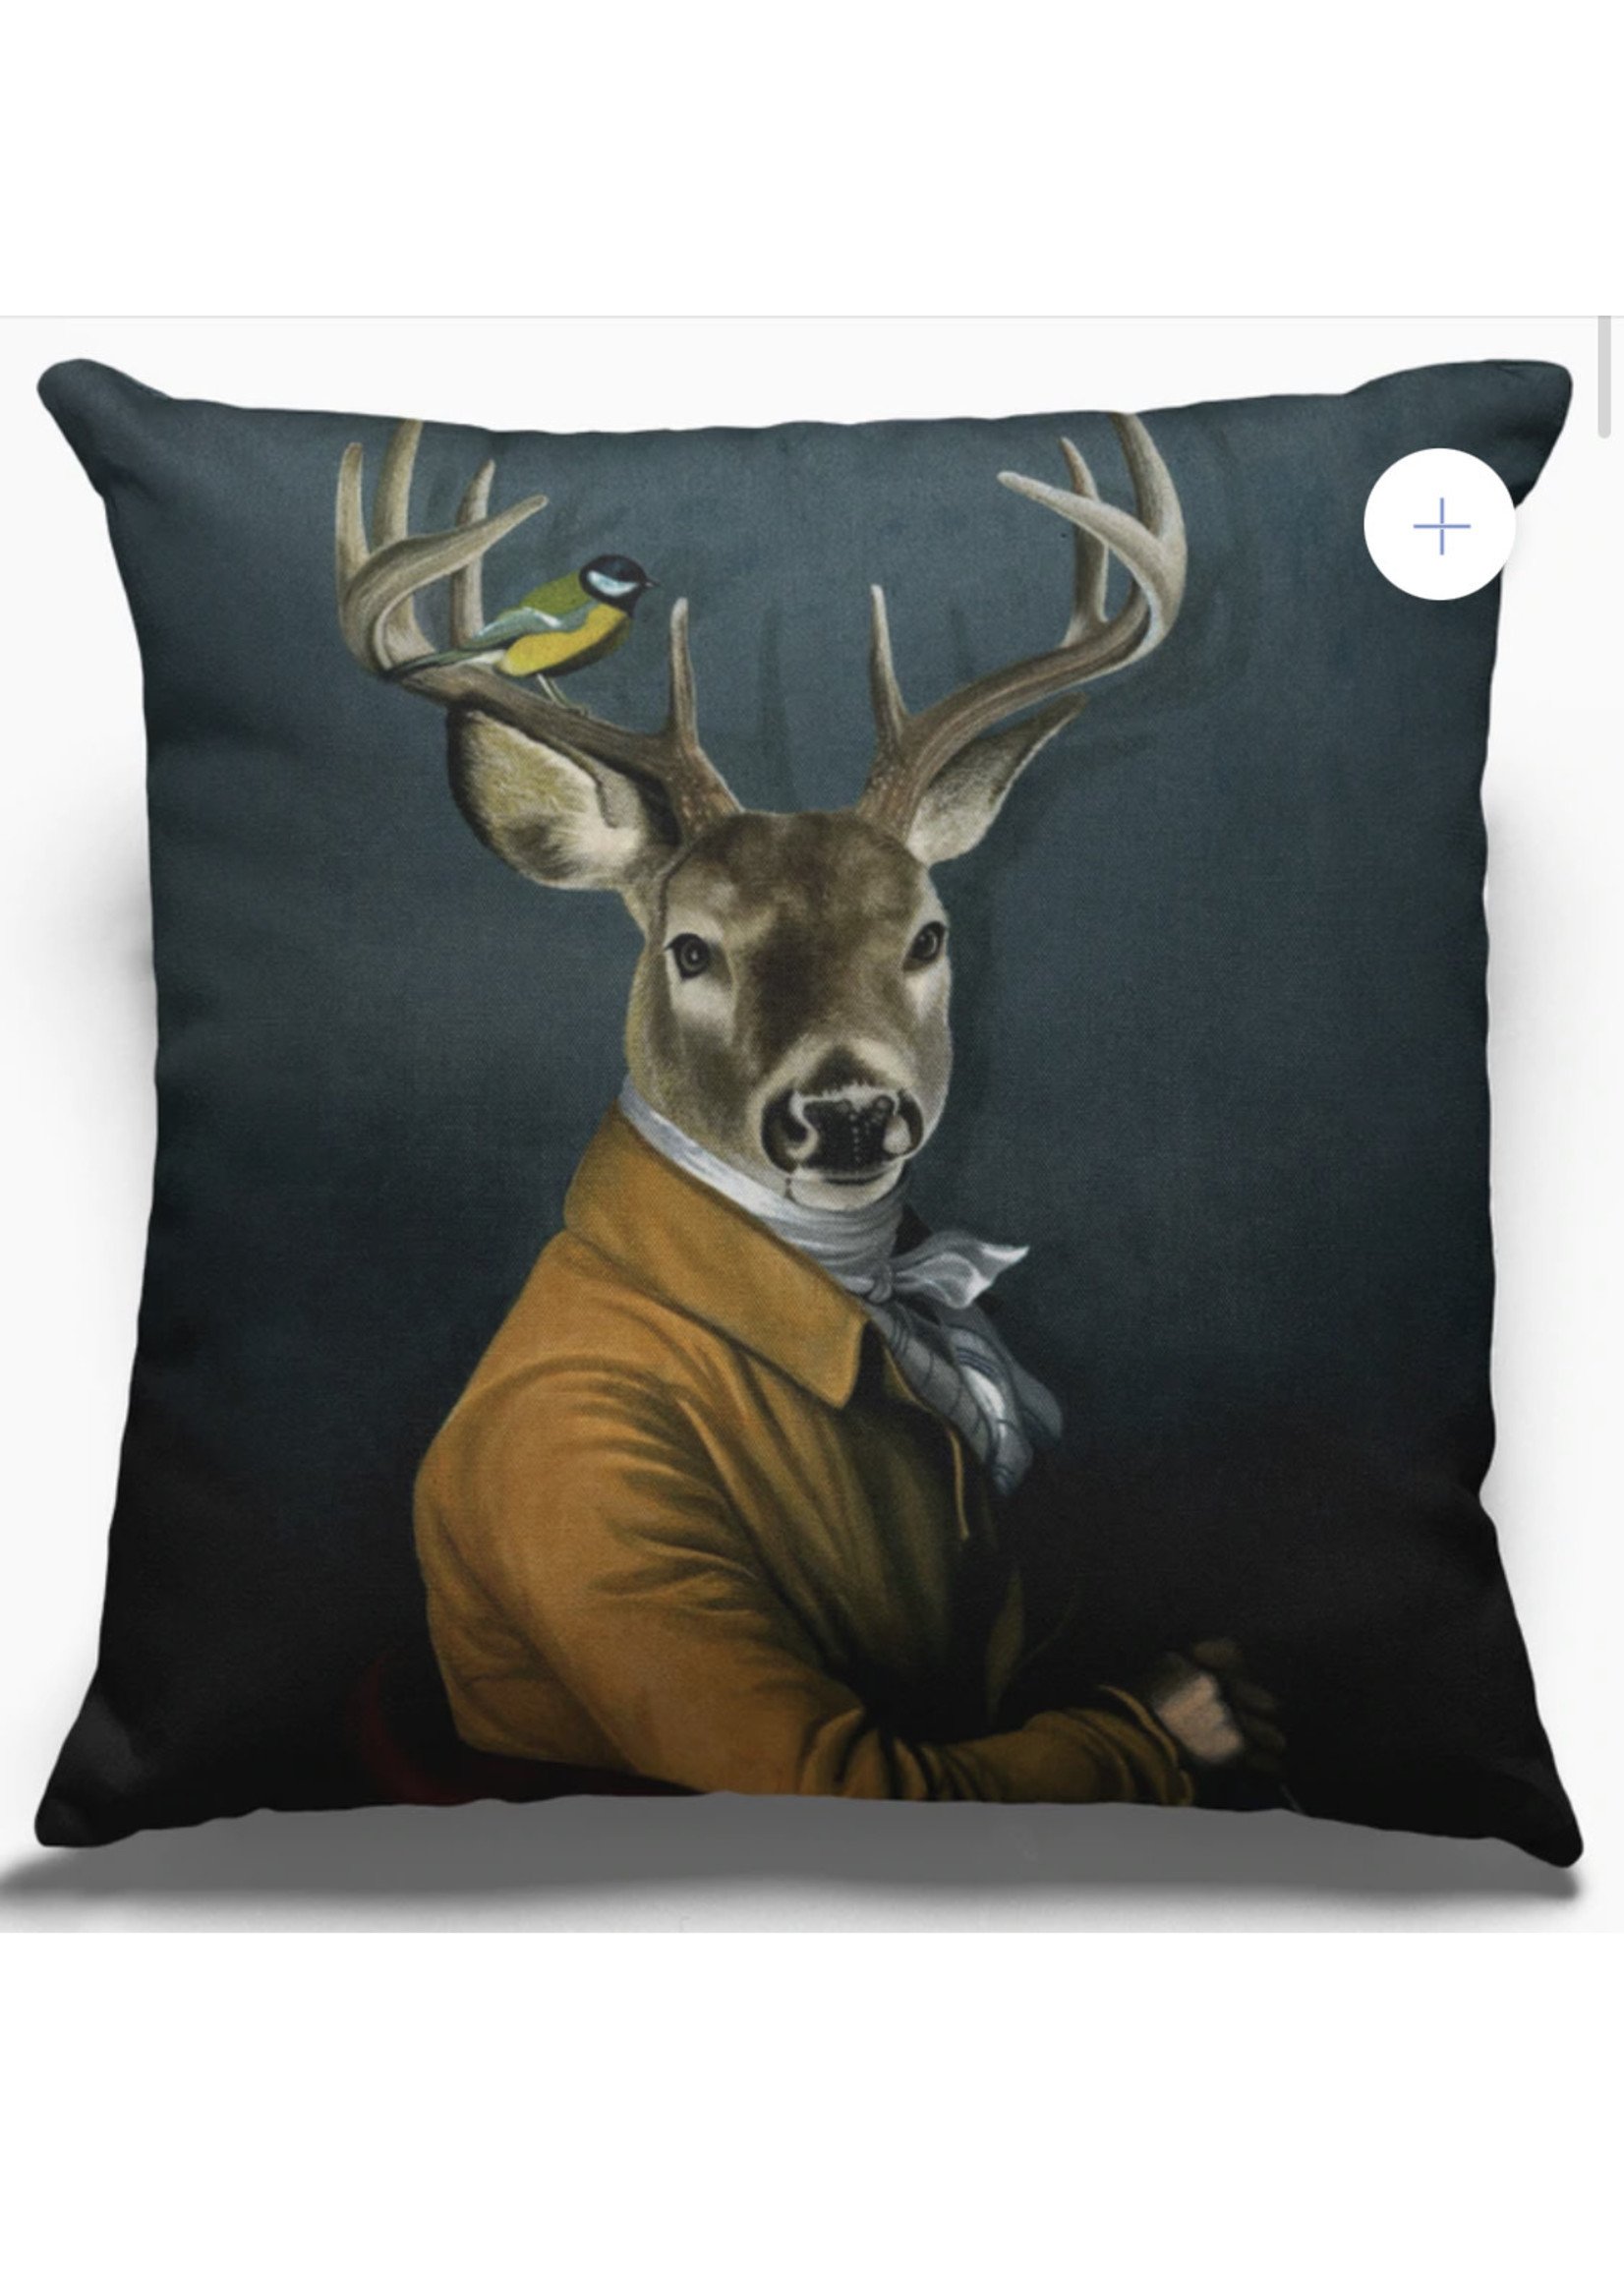 Moderny Sovereign Series Pillows - Buck Deer w/bird